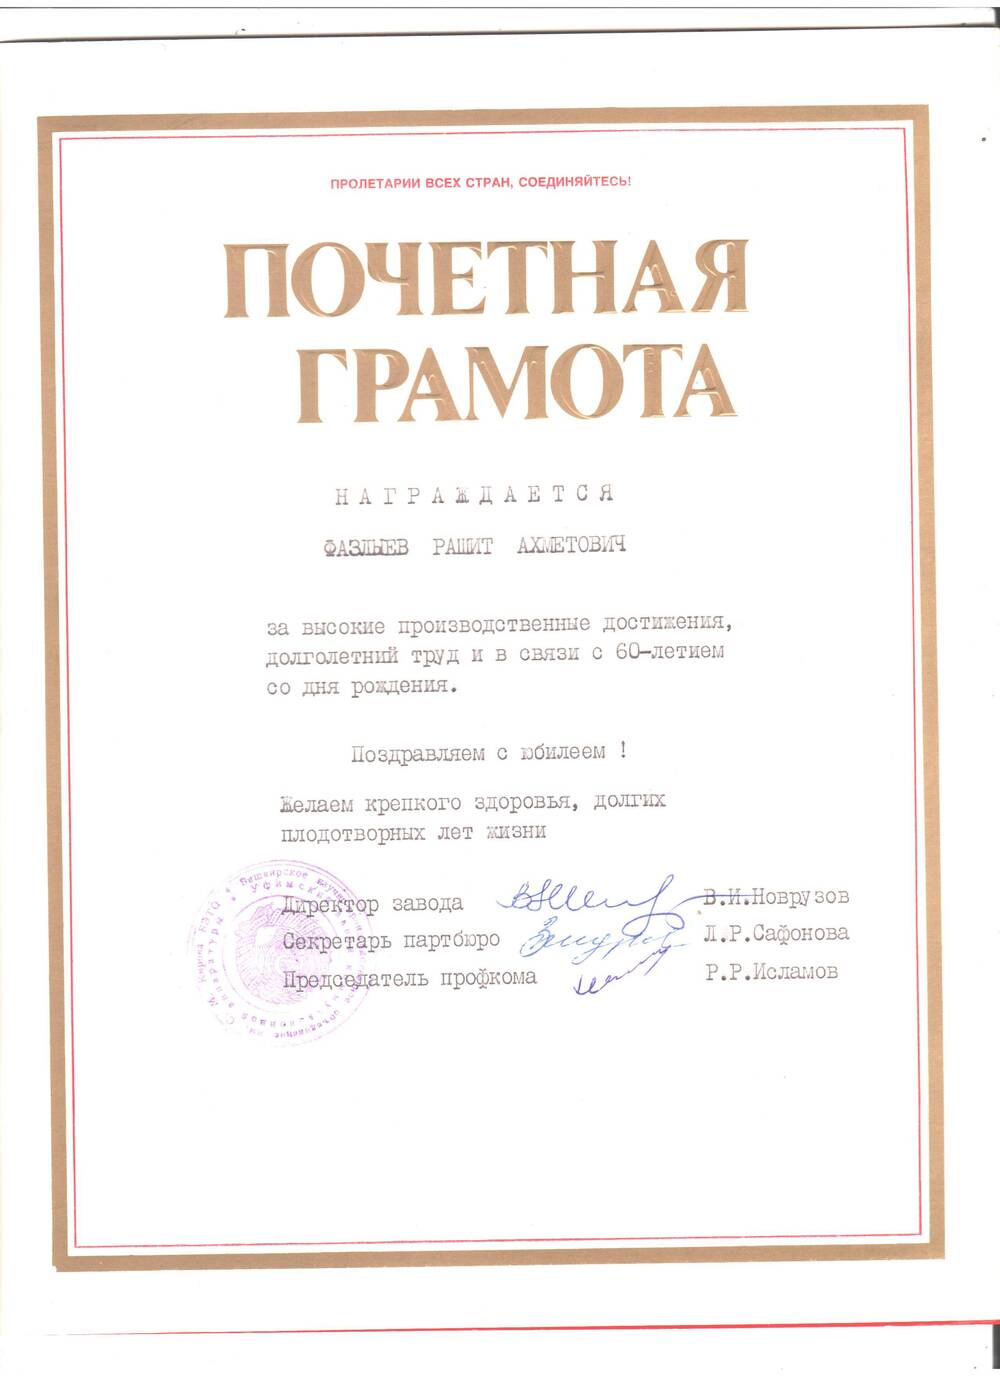 Почетная грамота на имя Фазлыева Рашита А. за высокие производственные достижения, долголетний труд и в связи с 60-летием со дня рождения. 1990год